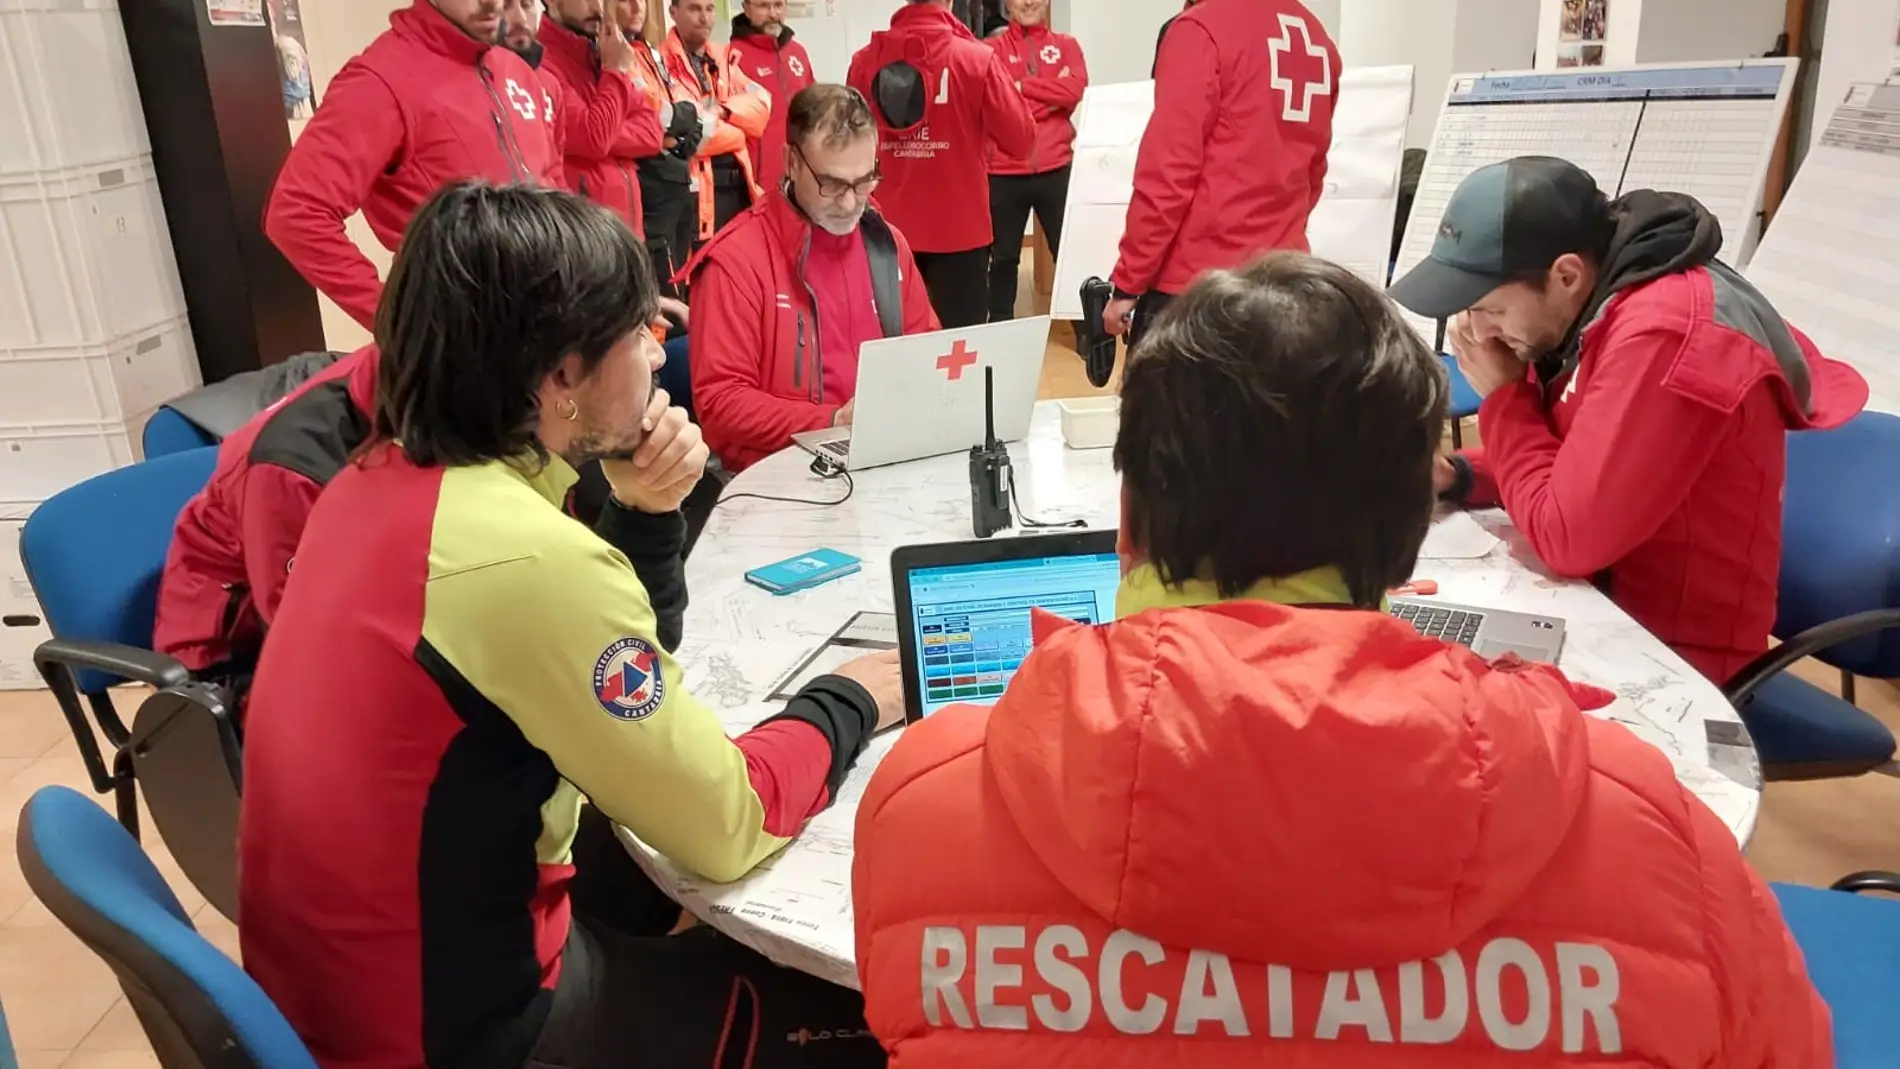 Cantabria activa el protocolo operativo de rescate para ayudar a salir a 4 espeleólogos de una cueva de Arredondo